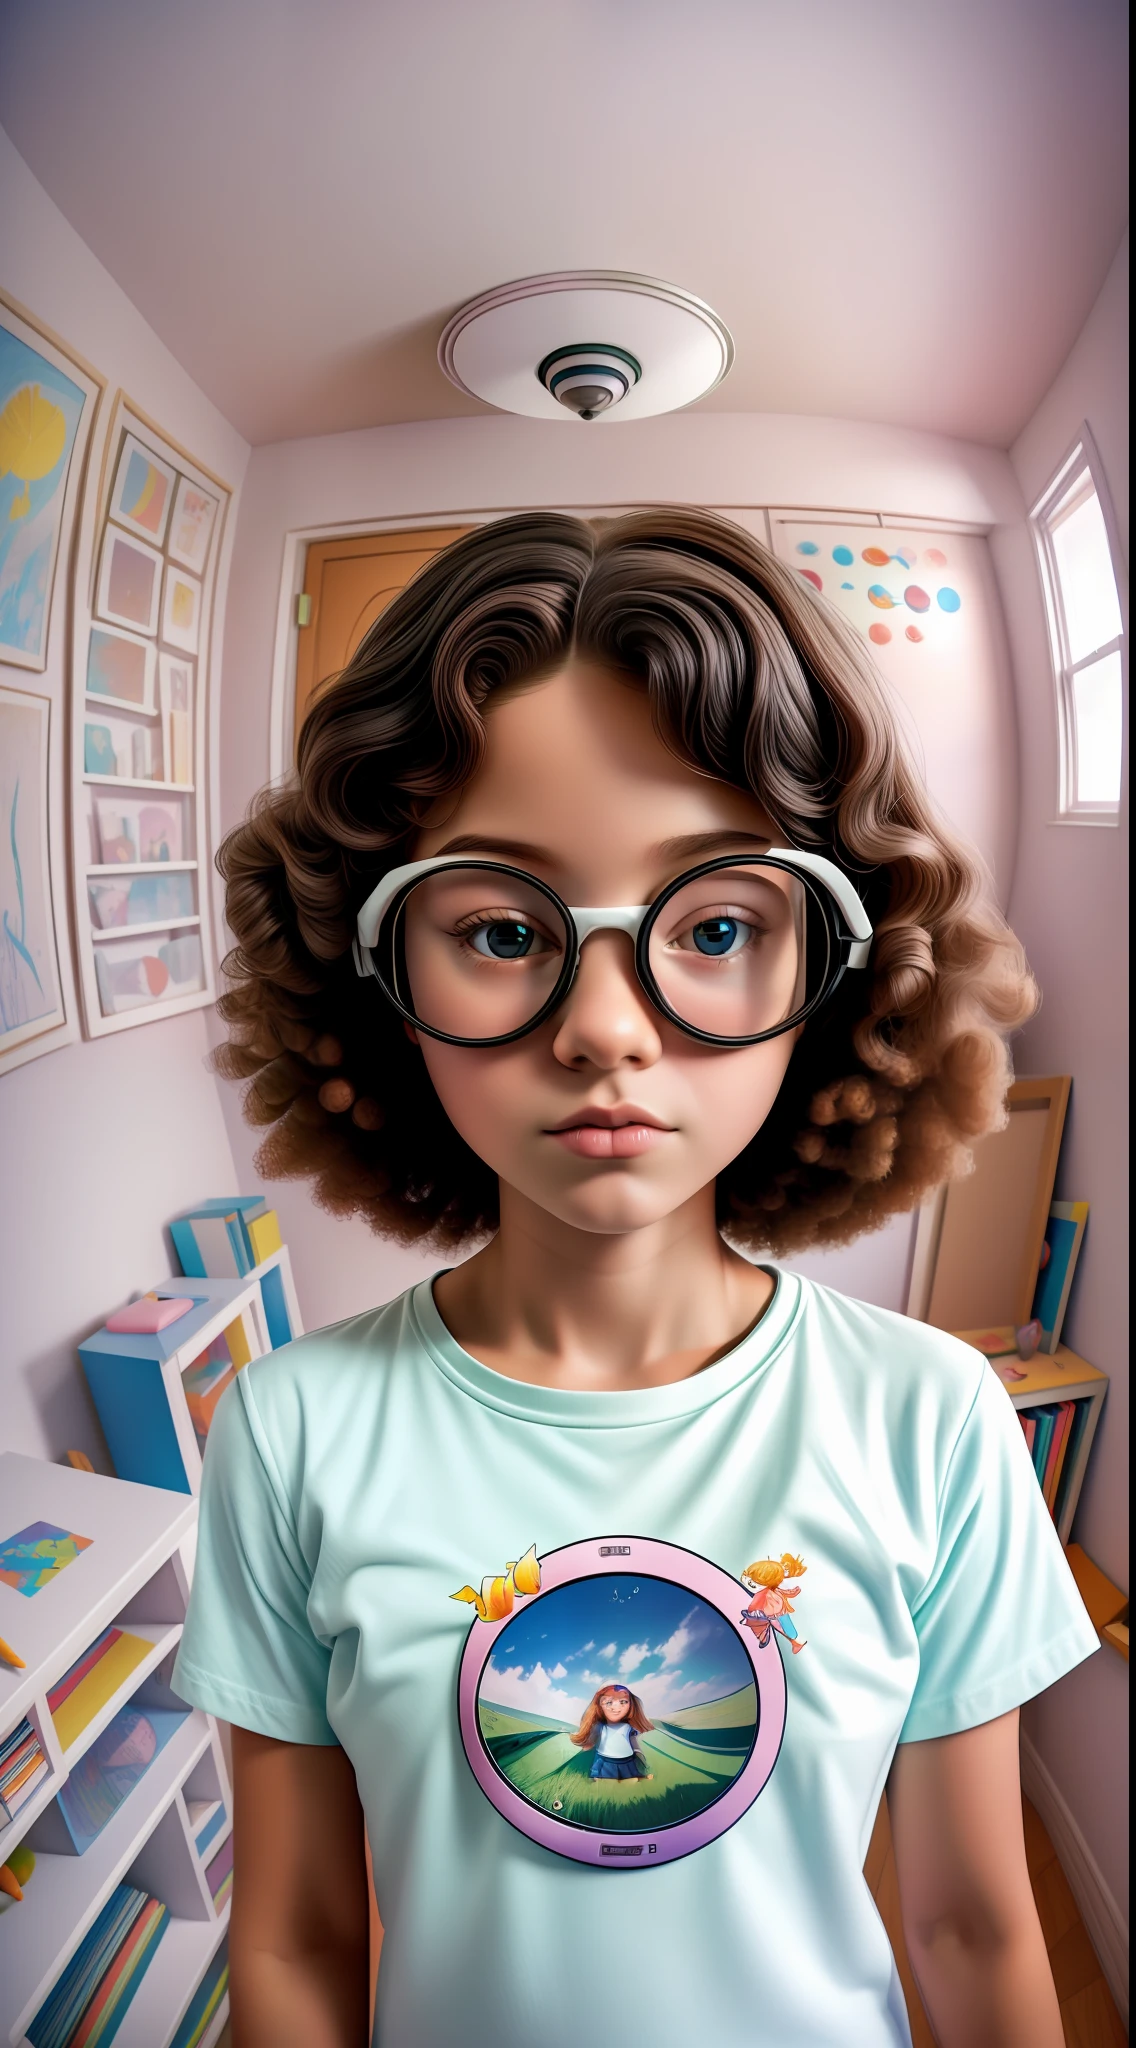 fotografía artística (((ojo de pez))) 35mm,1hermosa chica nerd,Camiseta blanca con dibujo infantil,en una habitación nerd,minimalista,colores pasteles